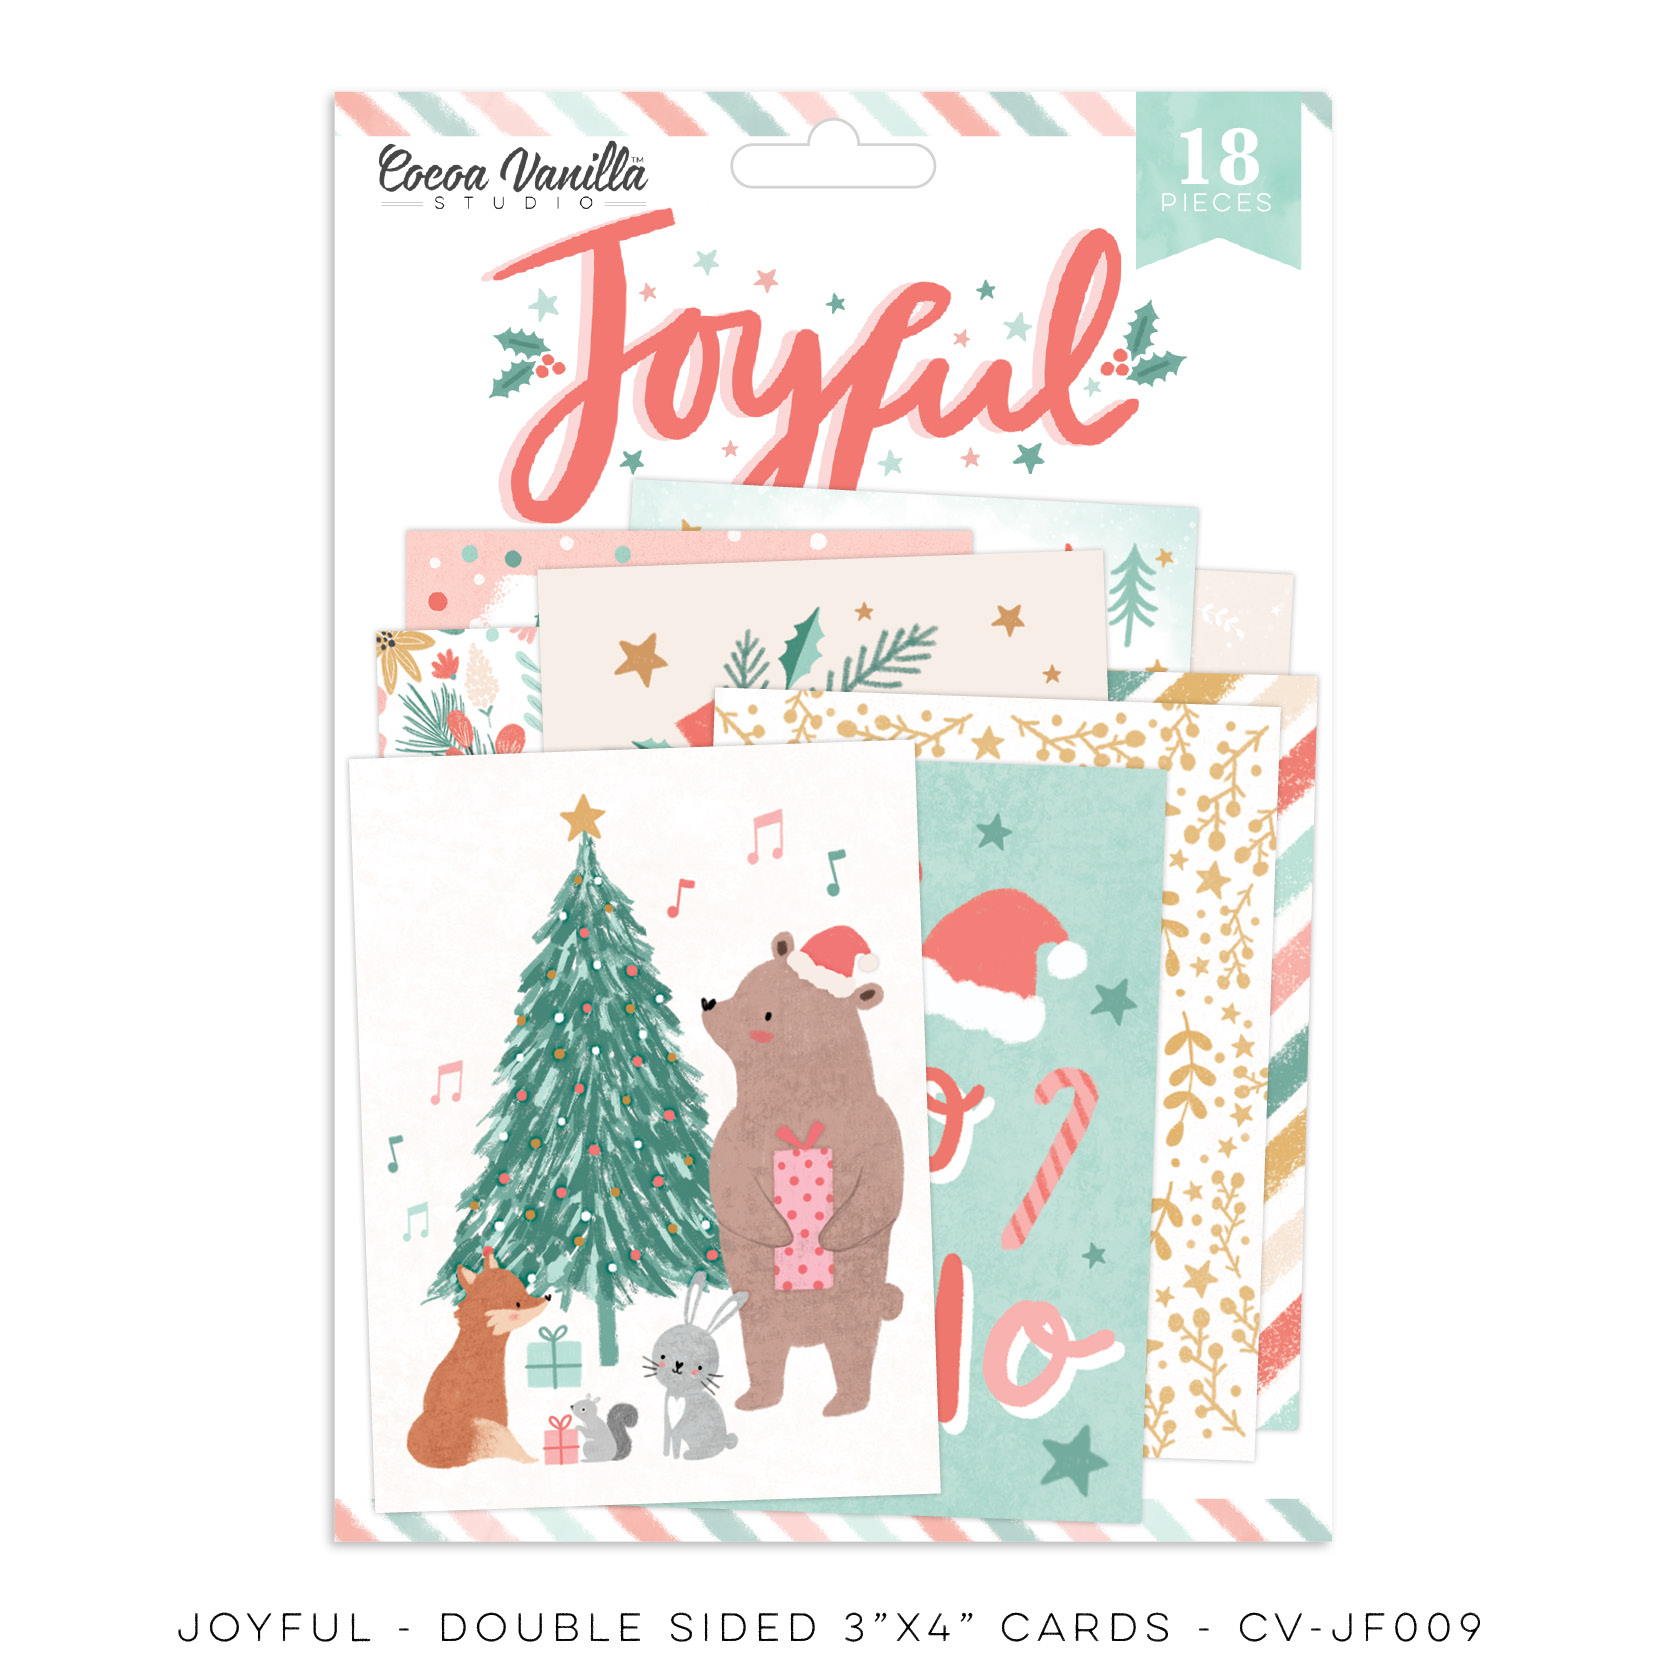 Pocket Cards - Joyful - 18 Double Sided 3"x4" Cards